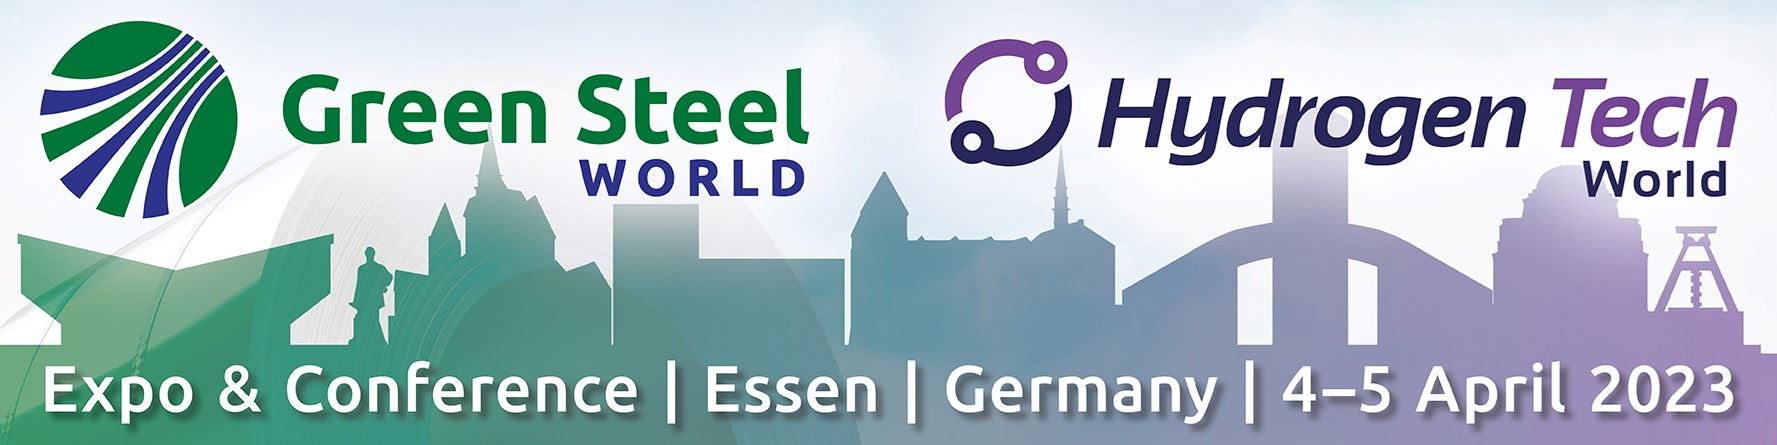 Green Steel World konferansı 4-5 Nisan tarihlerinde gerçekleşecek!